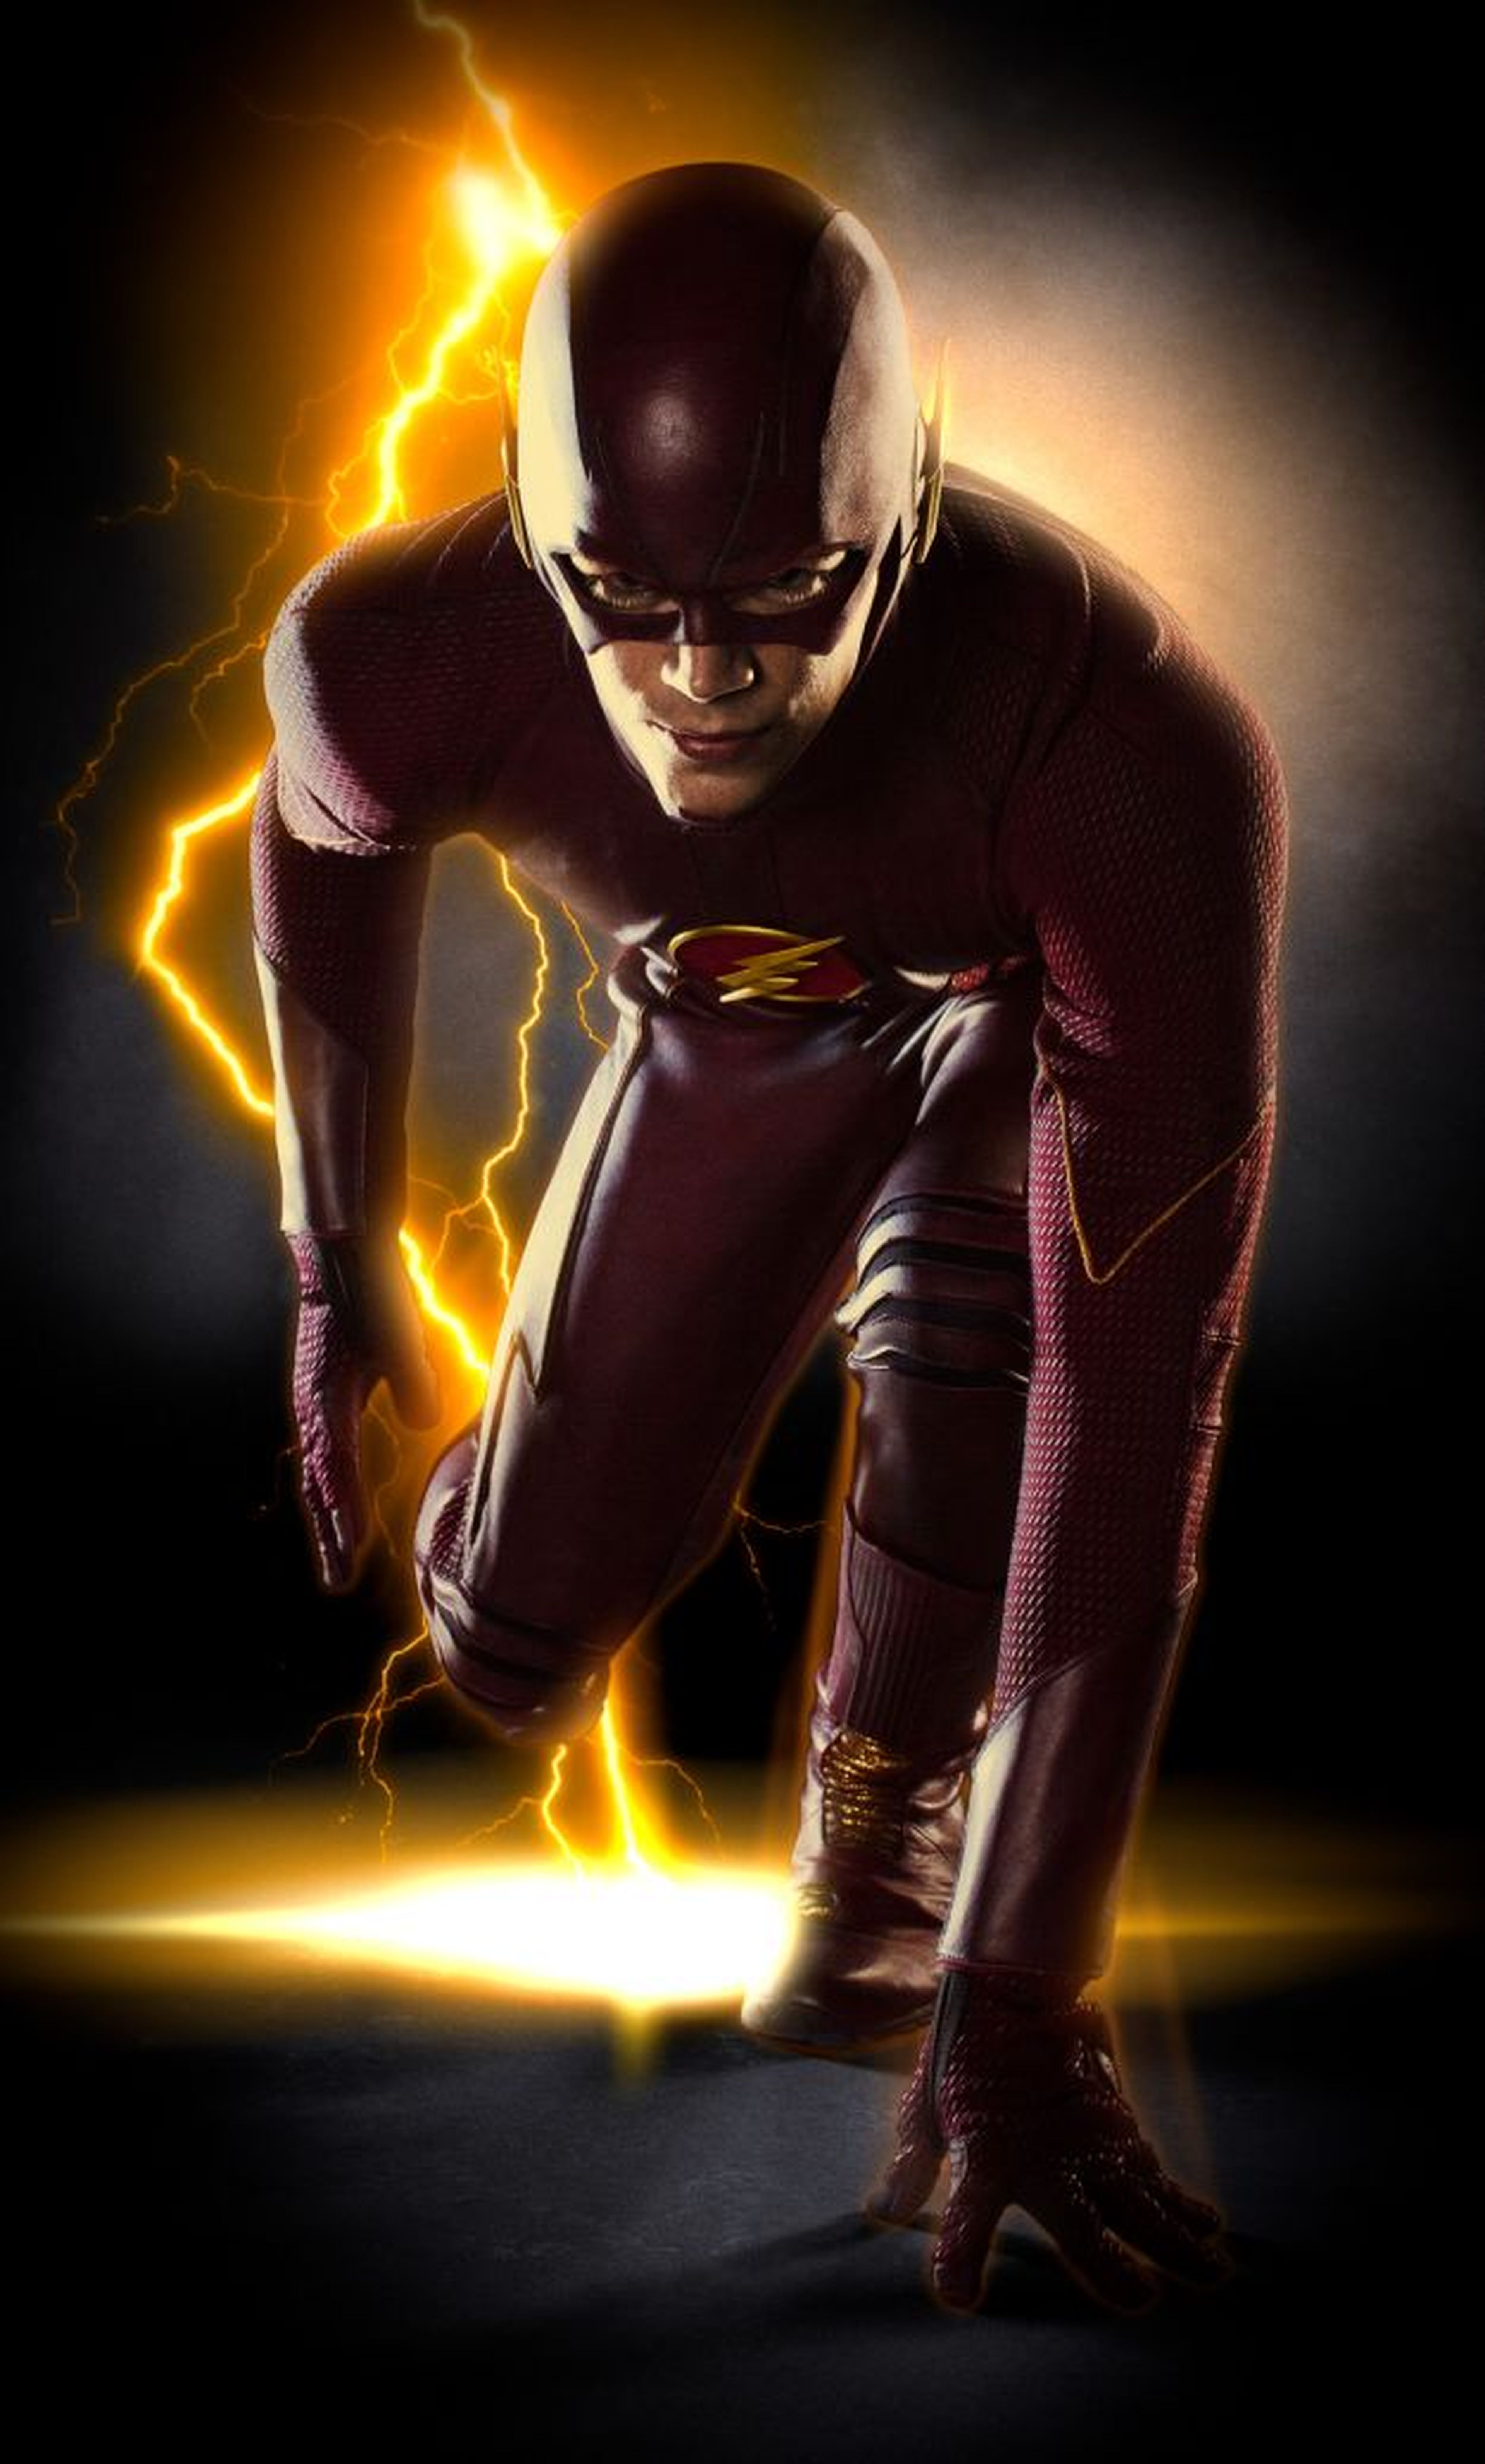 El traje de Flash, de cuerpo entero